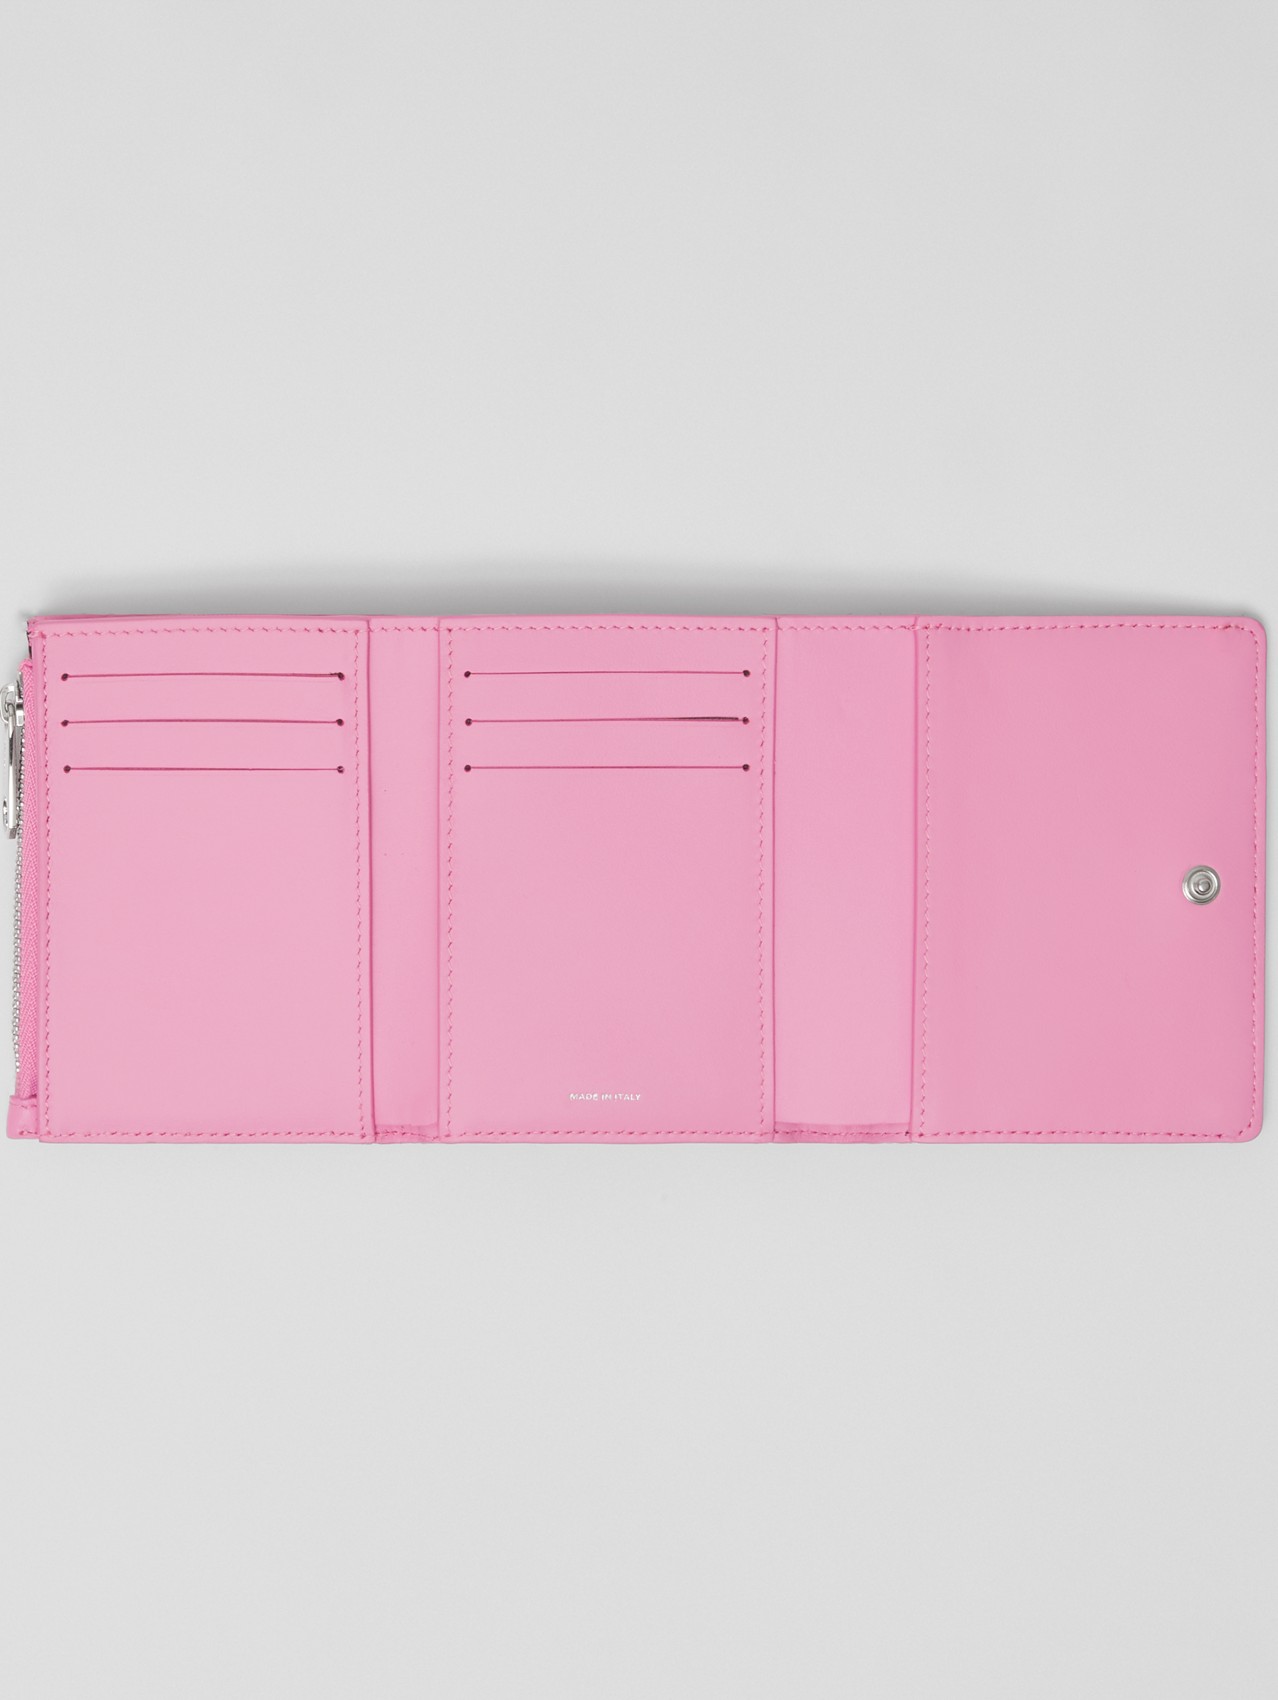 Складной бумажник Lola из кожи ягненка, компактный размер in Розовая Примула